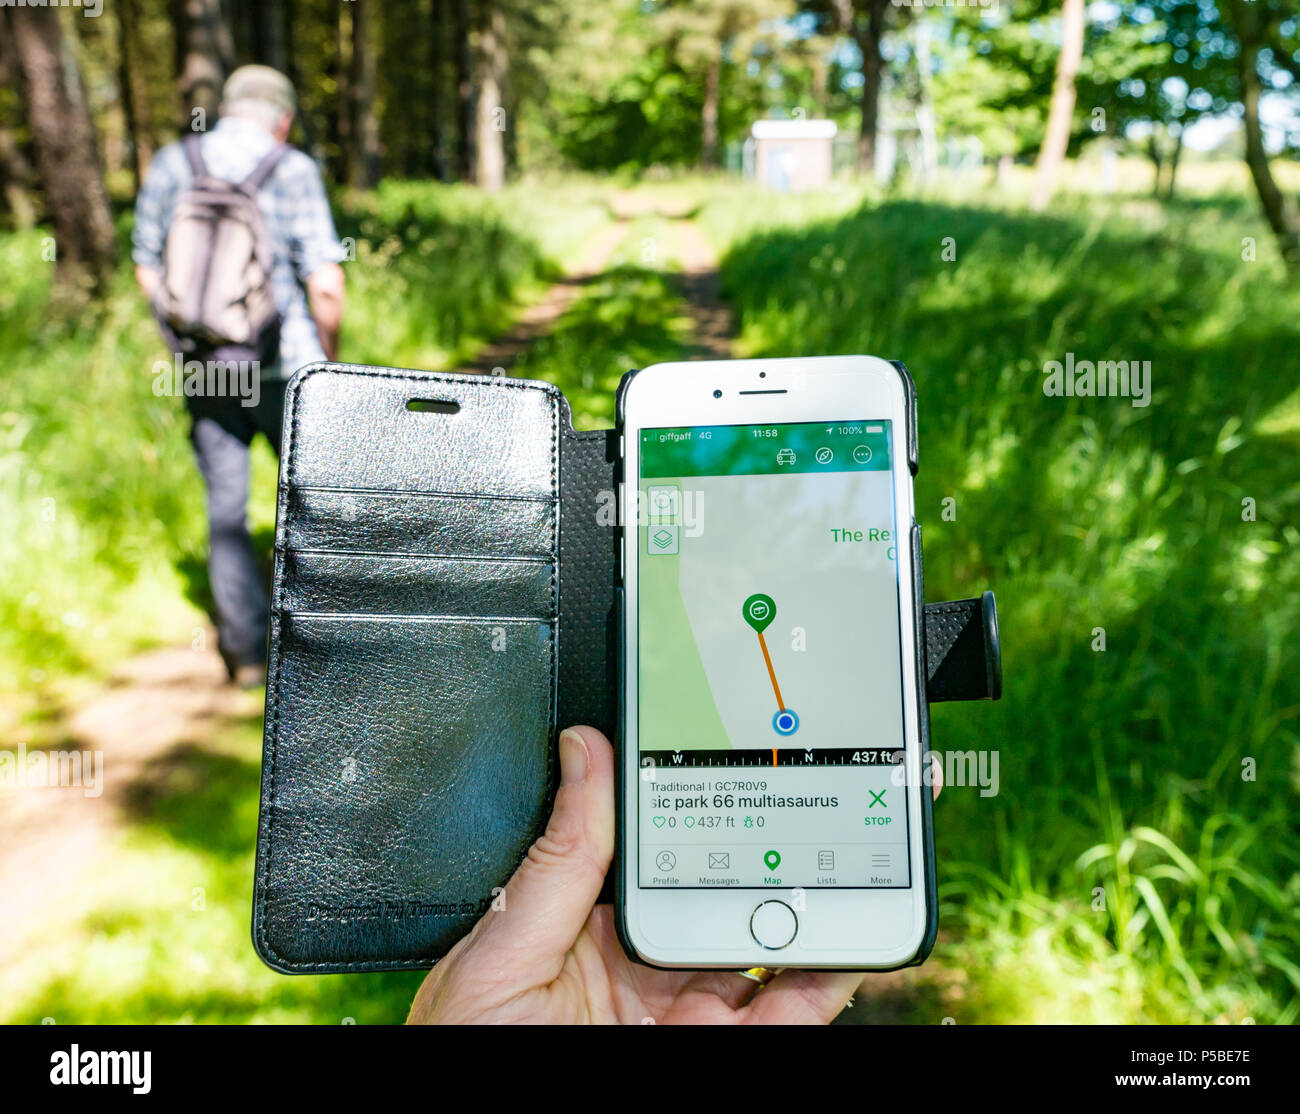 Gros plan de la main d'une femme tenant un téléphone mobile à l'aide de l'application de chasse au Trésor montrant un Trésor à proximité lors d'une promenade dans les bois, Écosse, Royaume-Uni Banque D'Images